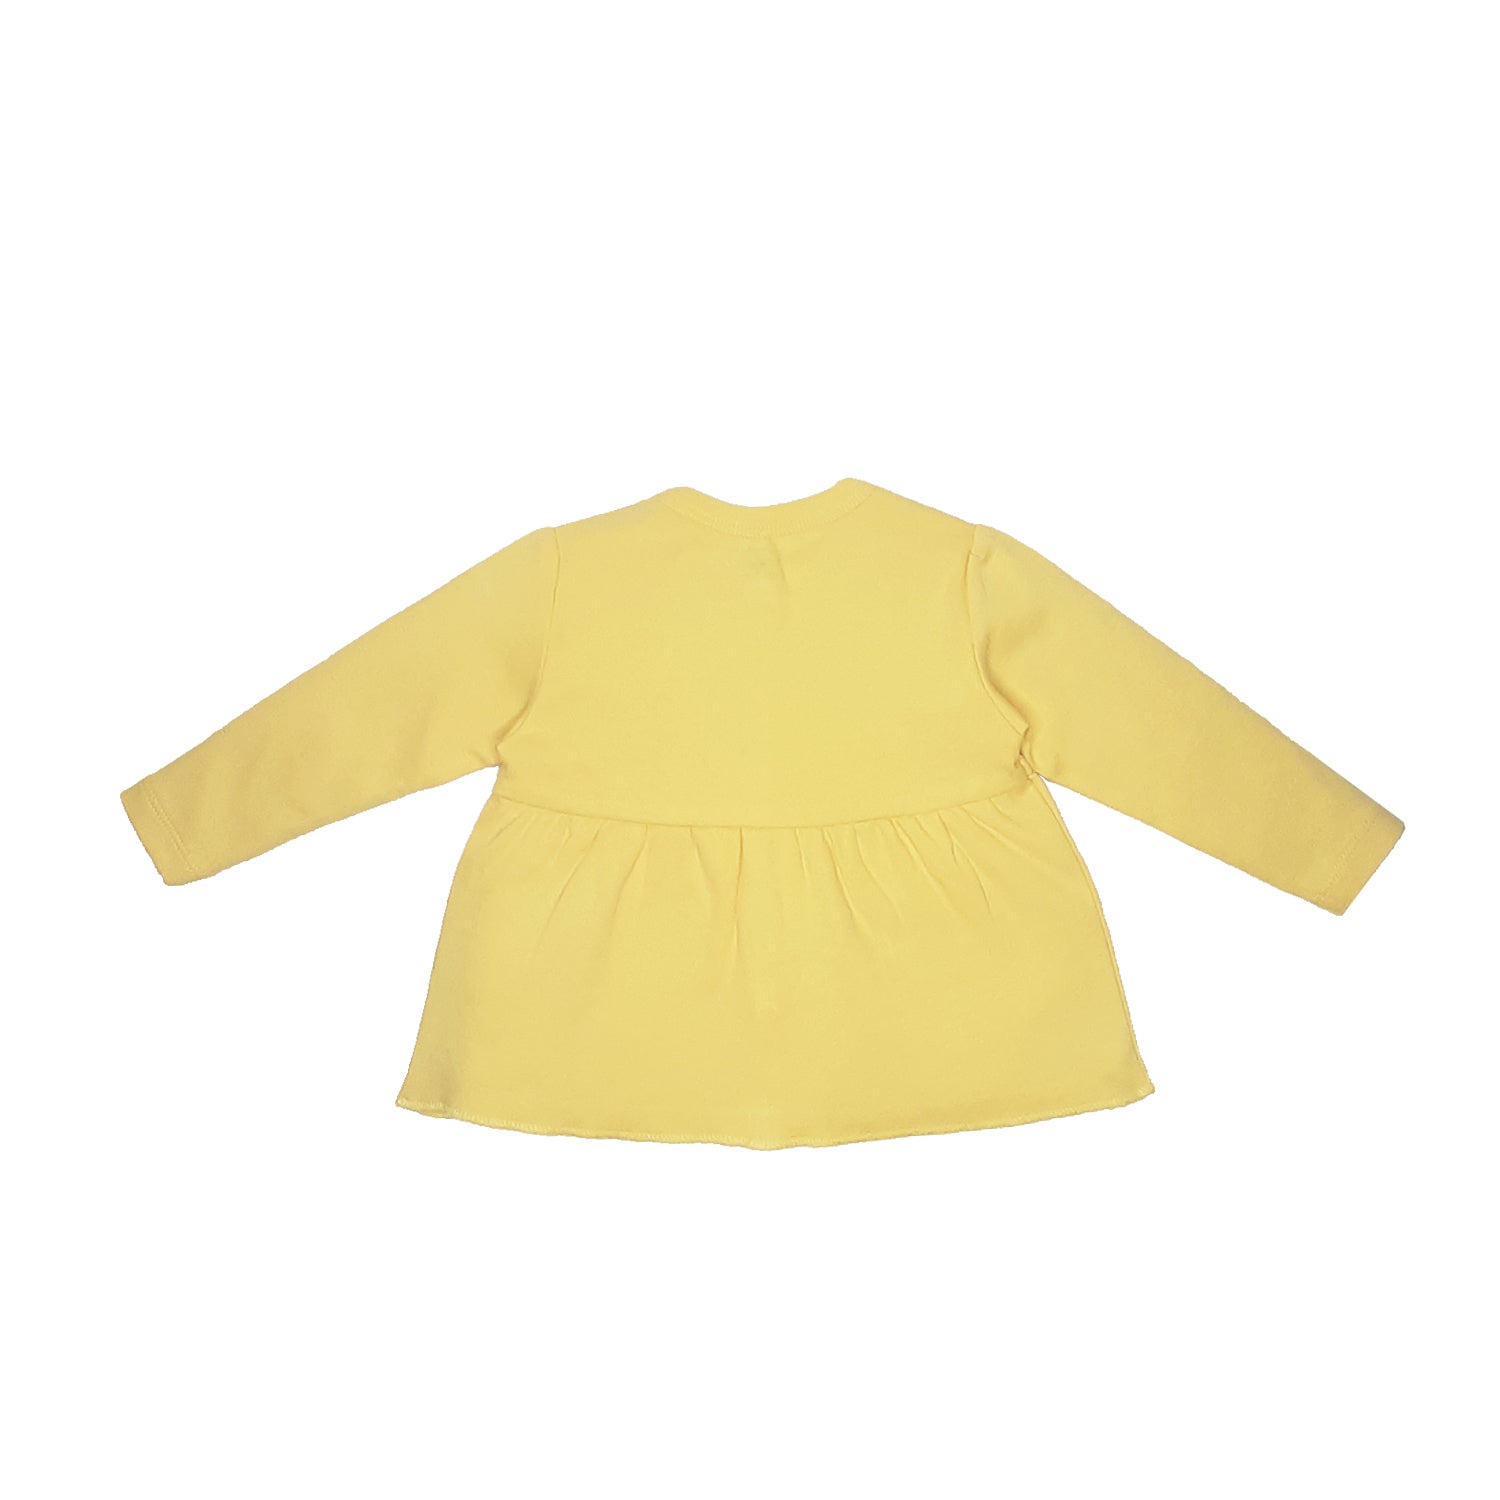 My Milestones T-shirt Full Sleeves Girls Yellow/ Navy Blue -2 PC Pack